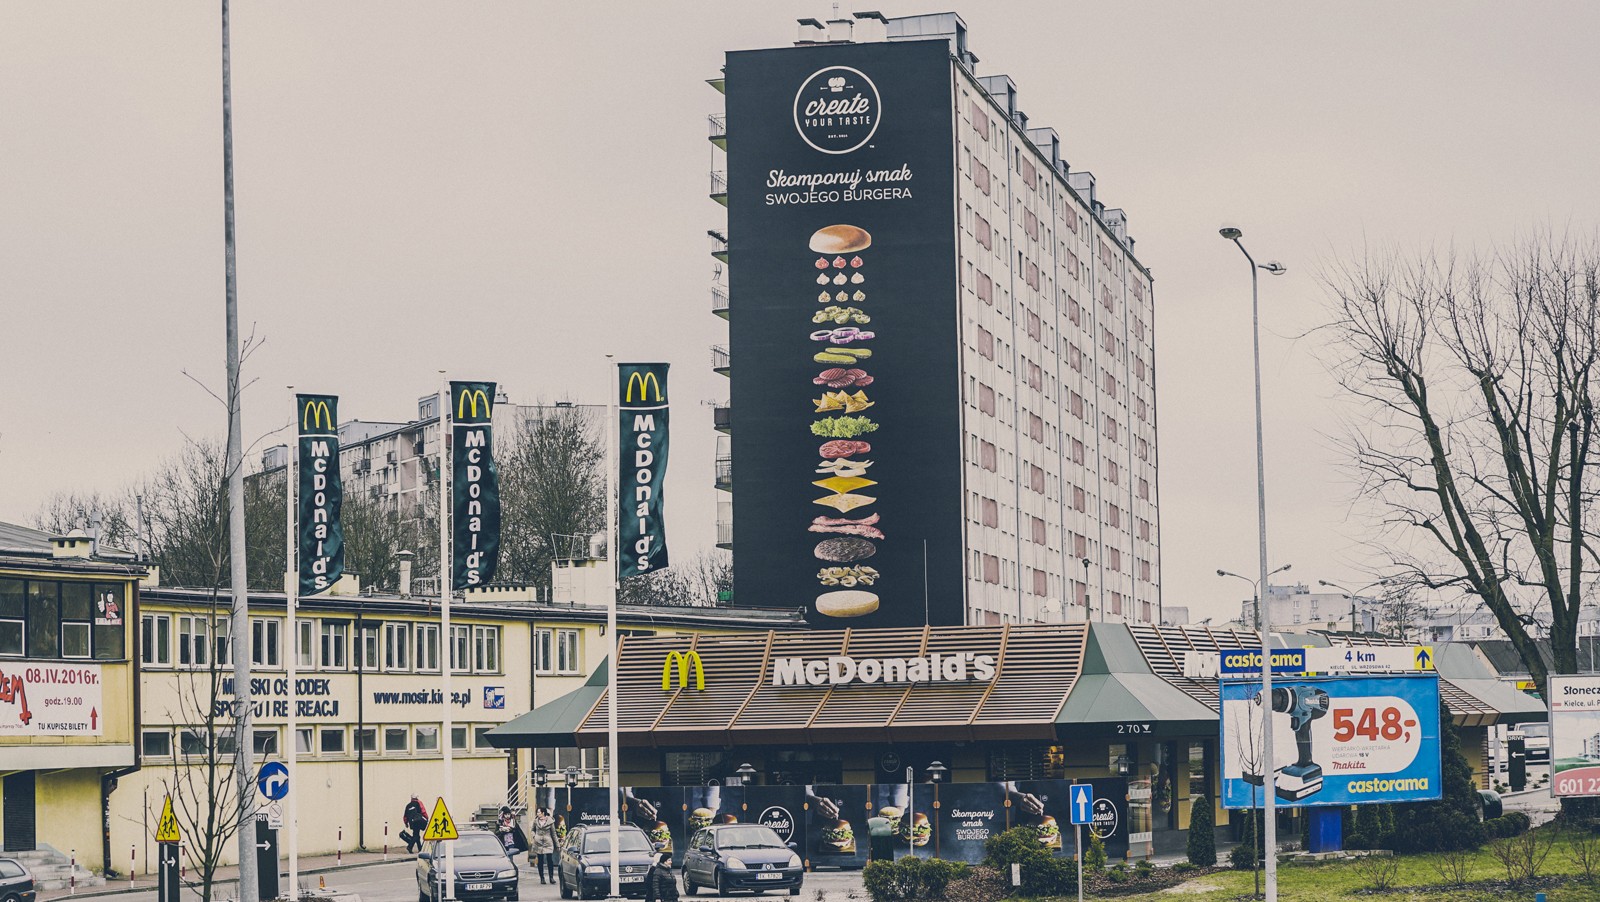 Ein Mural für die Marke McDonalds für die Werbekampagne Create your taste an der Fassade in Kielce | reklama muralowa dla McDonald's | Portfolio